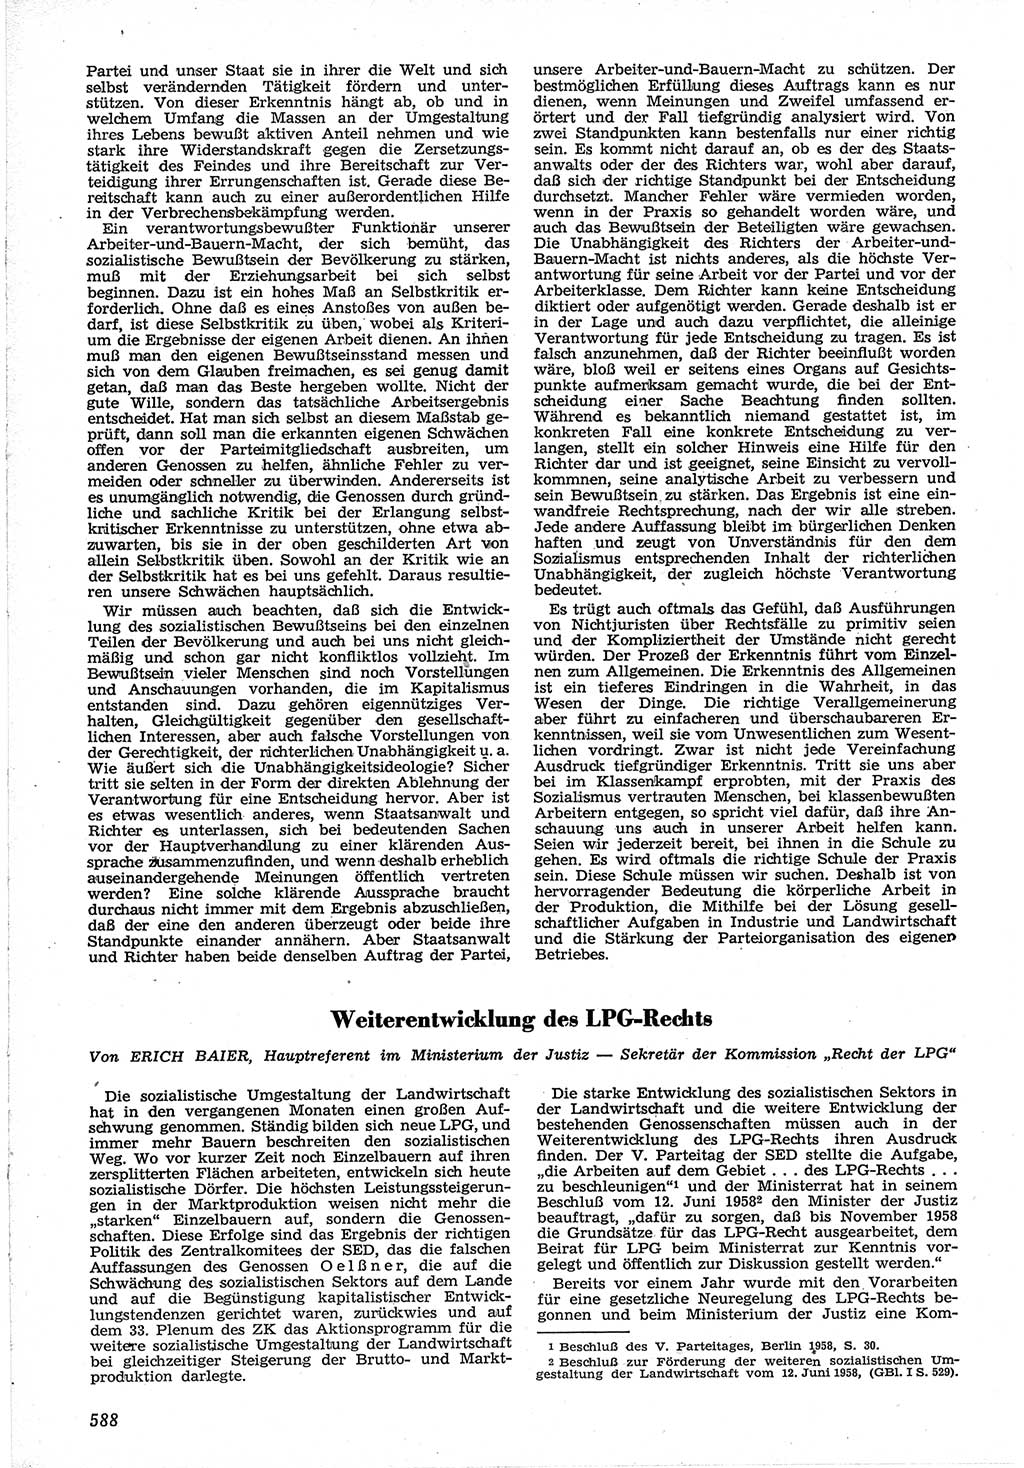 Neue Justiz (NJ), Zeitschrift für Recht und Rechtswissenschaft [Deutsche Demokratische Republik (DDR)], 12. Jahrgang 1958, Seite 588 (NJ DDR 1958, S. 588)